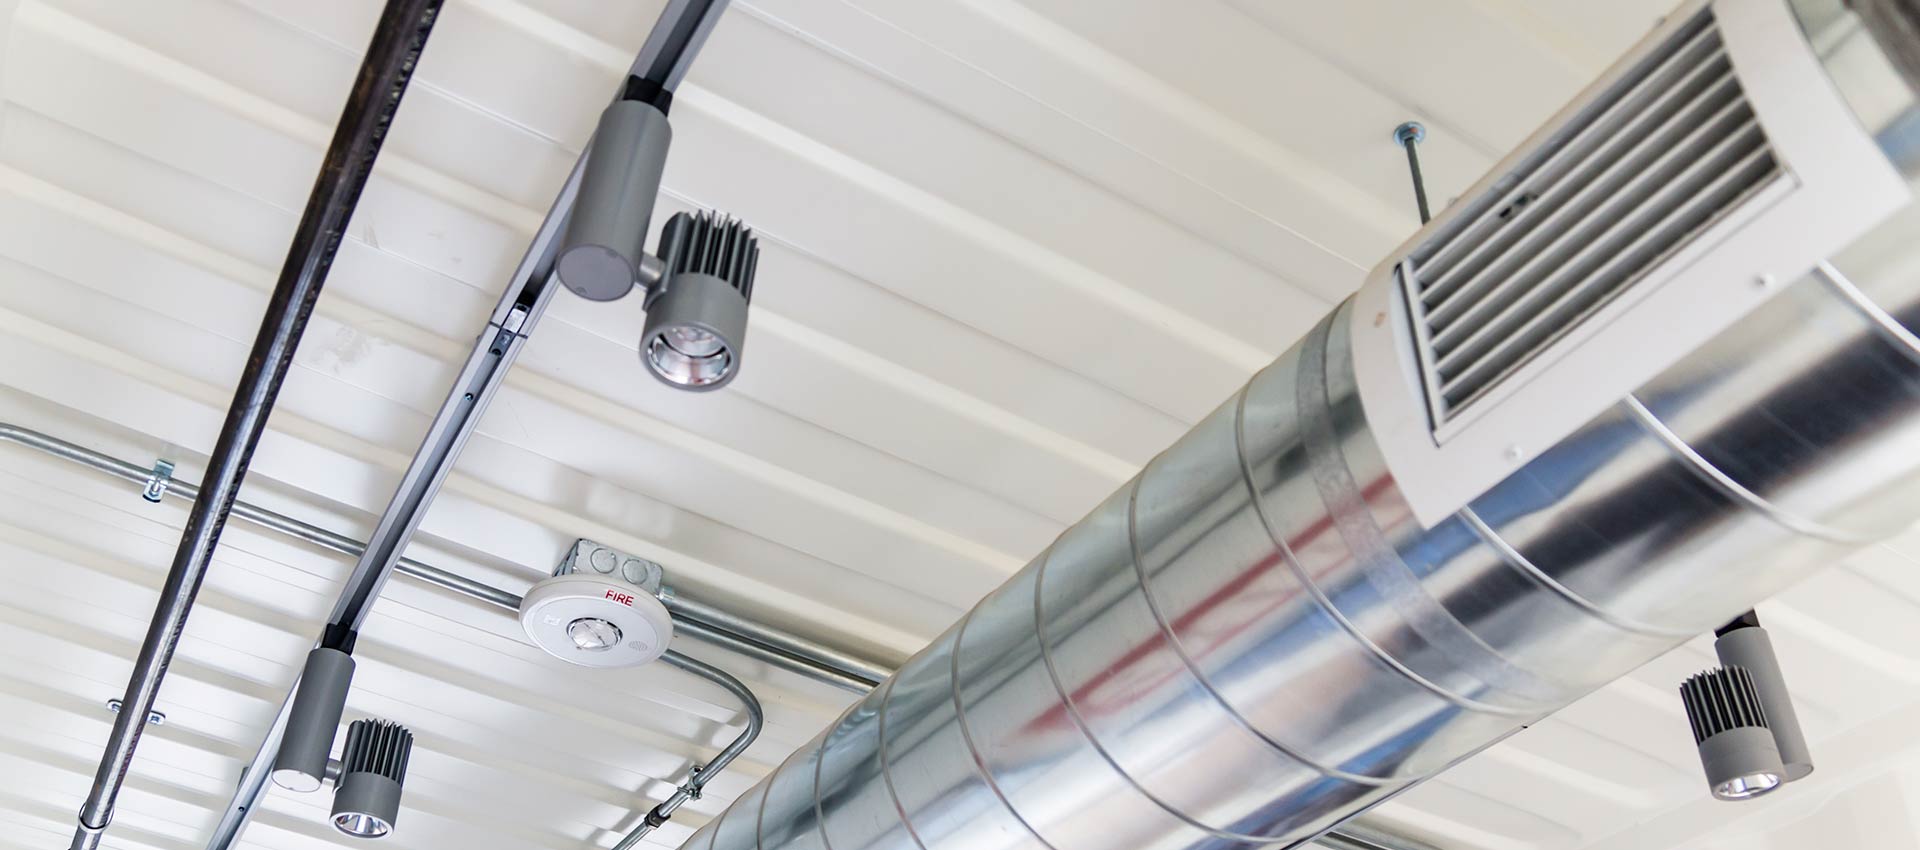 rensning af ventilationskanaler | rensning af ventilationskanaler københavn | rensning af ventilationskanaler farum